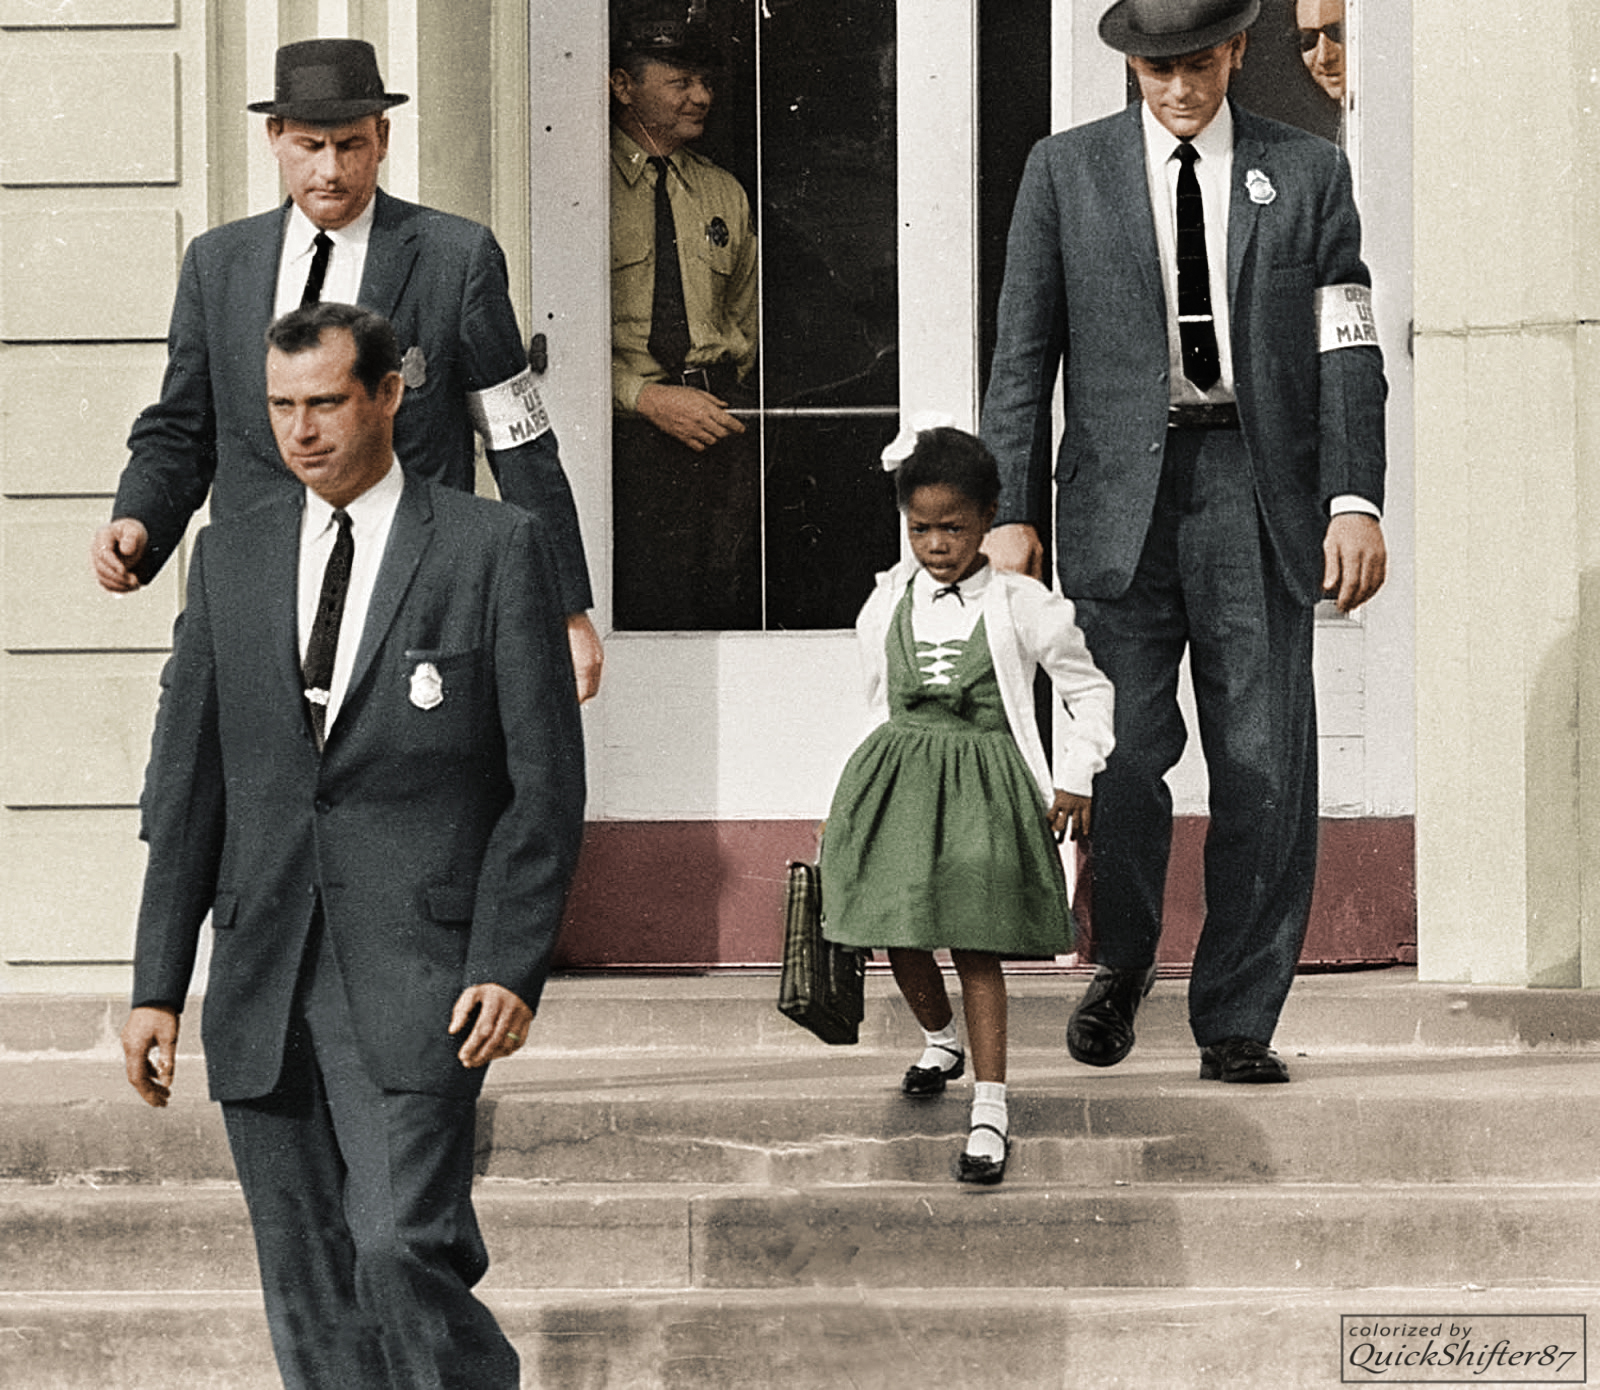 Руби Бриджес, первая афроамериканка из южных штатов, посещавшая школу для белых детей, отправляется на учебу под охраной федеральных маршалов. 1960 год.